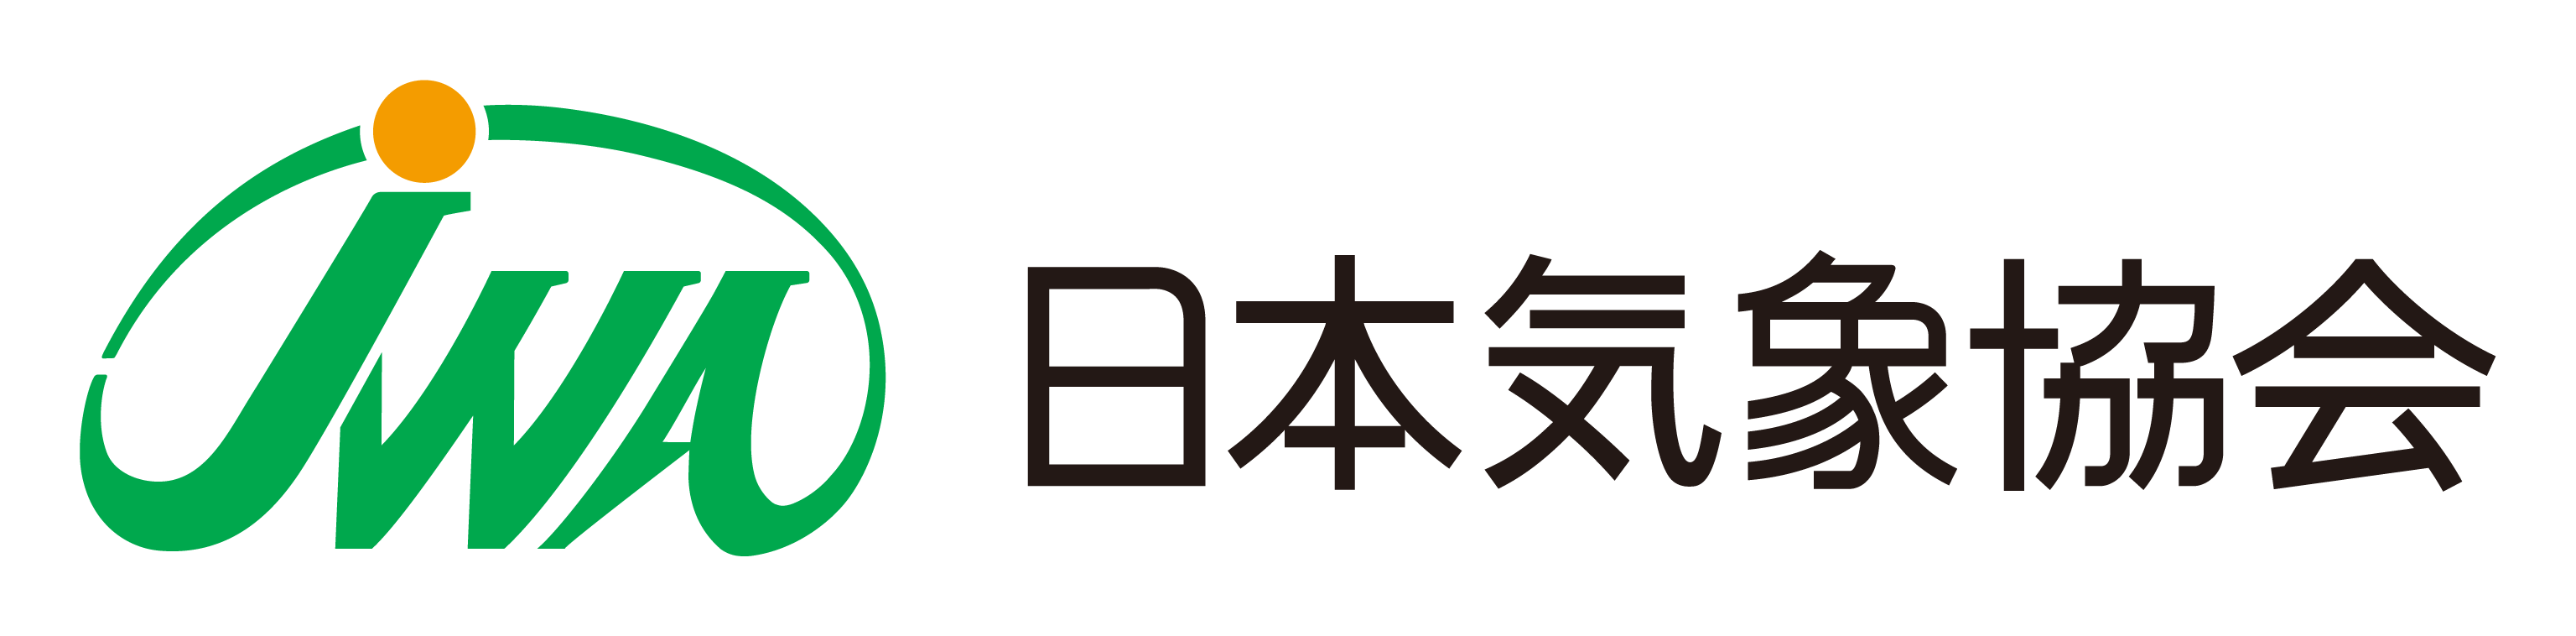 jwa_logo_004